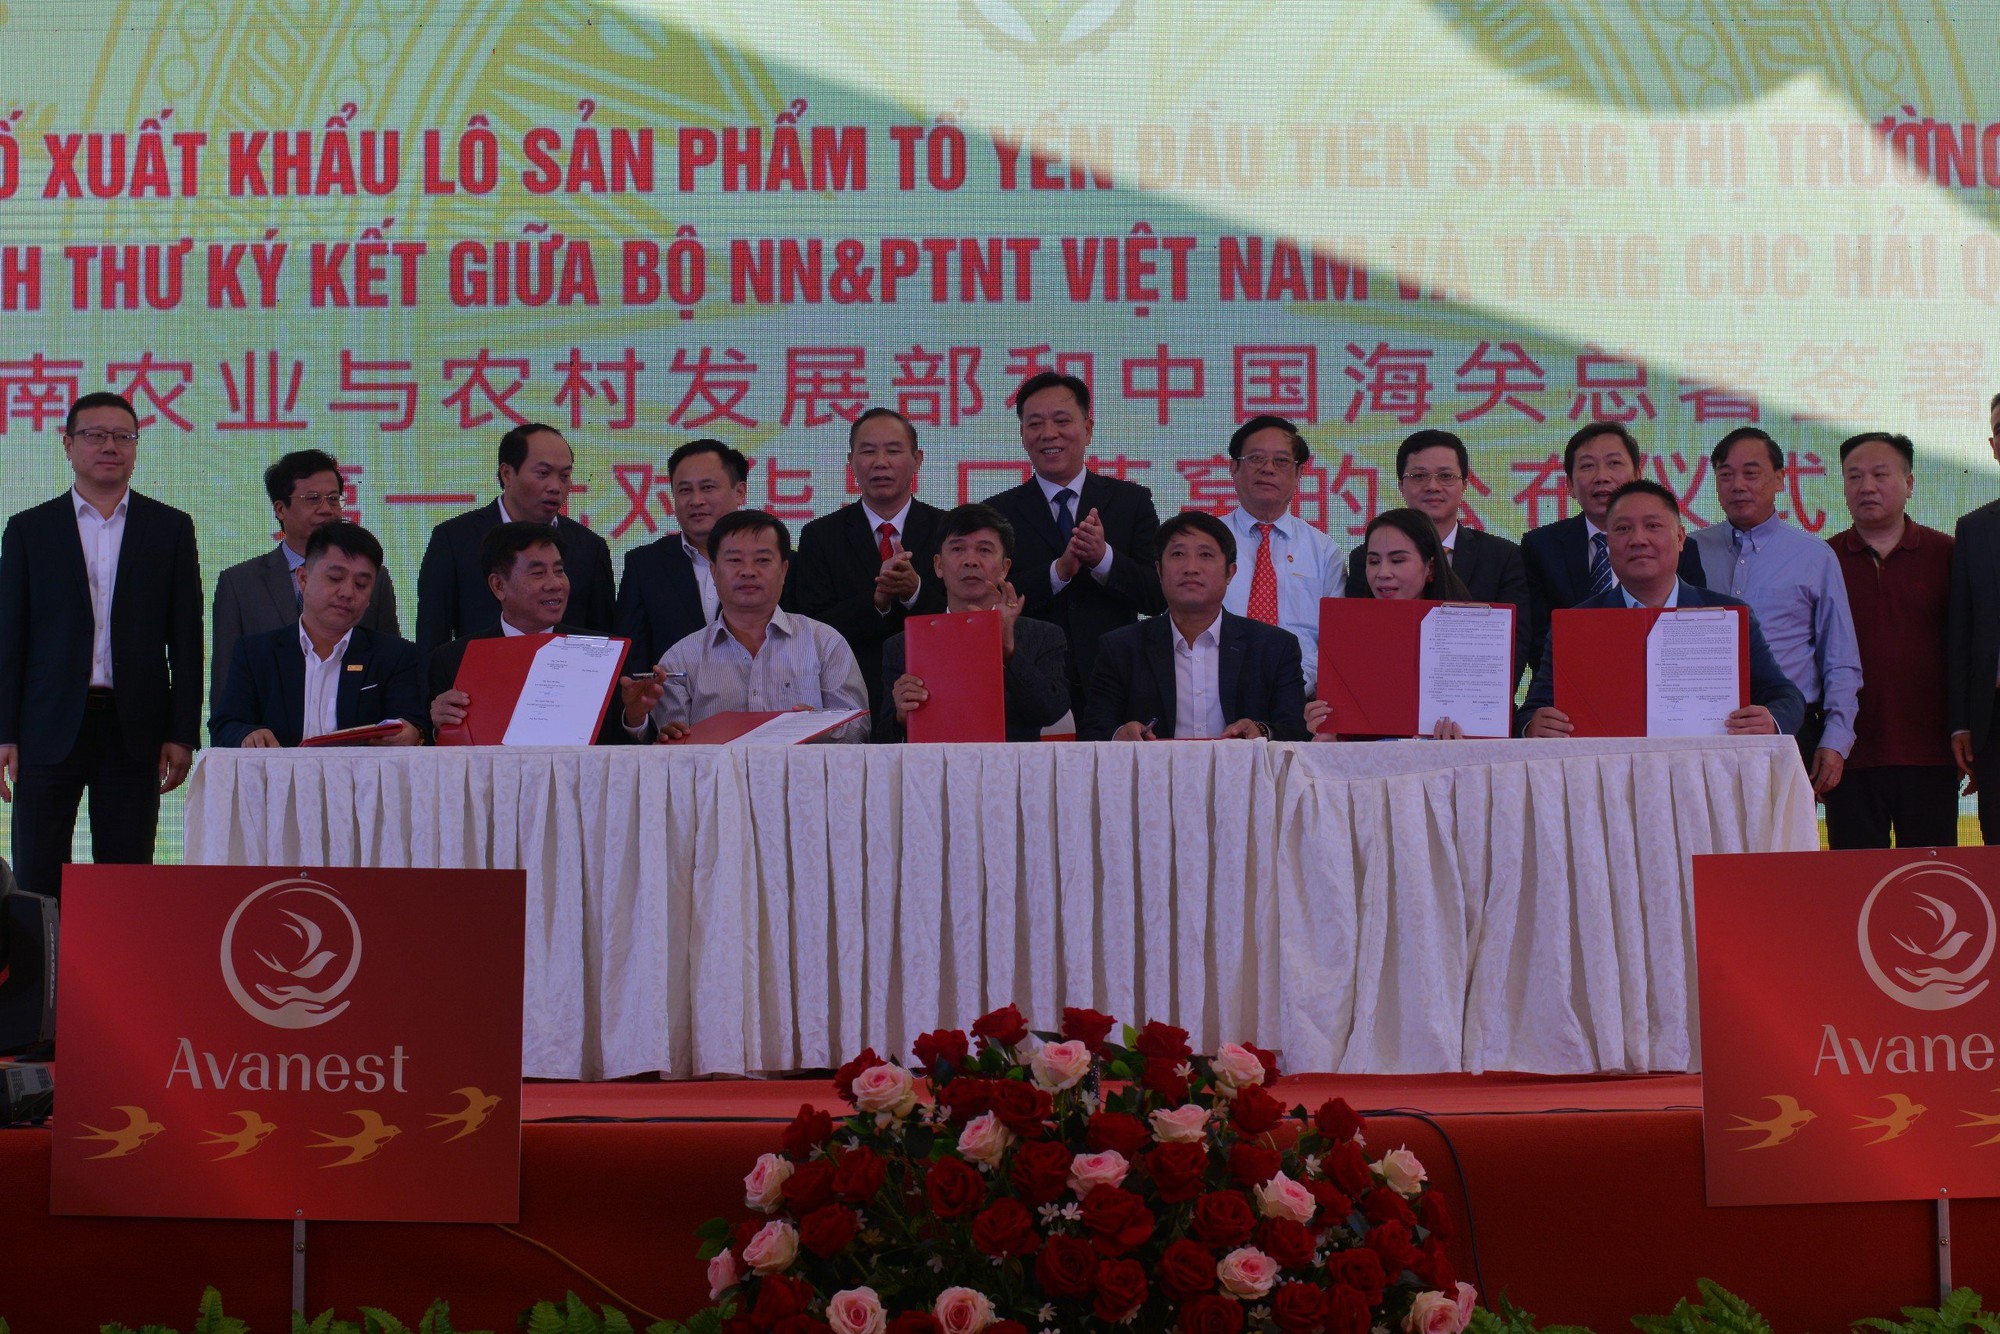 Trung Quốc cần mua 400 tấn tổ yến mỗi năm, cơ hội đưa ngành nuôi yến của Việt Nam thành ngành hàng tỷ đô - Ảnh 2.